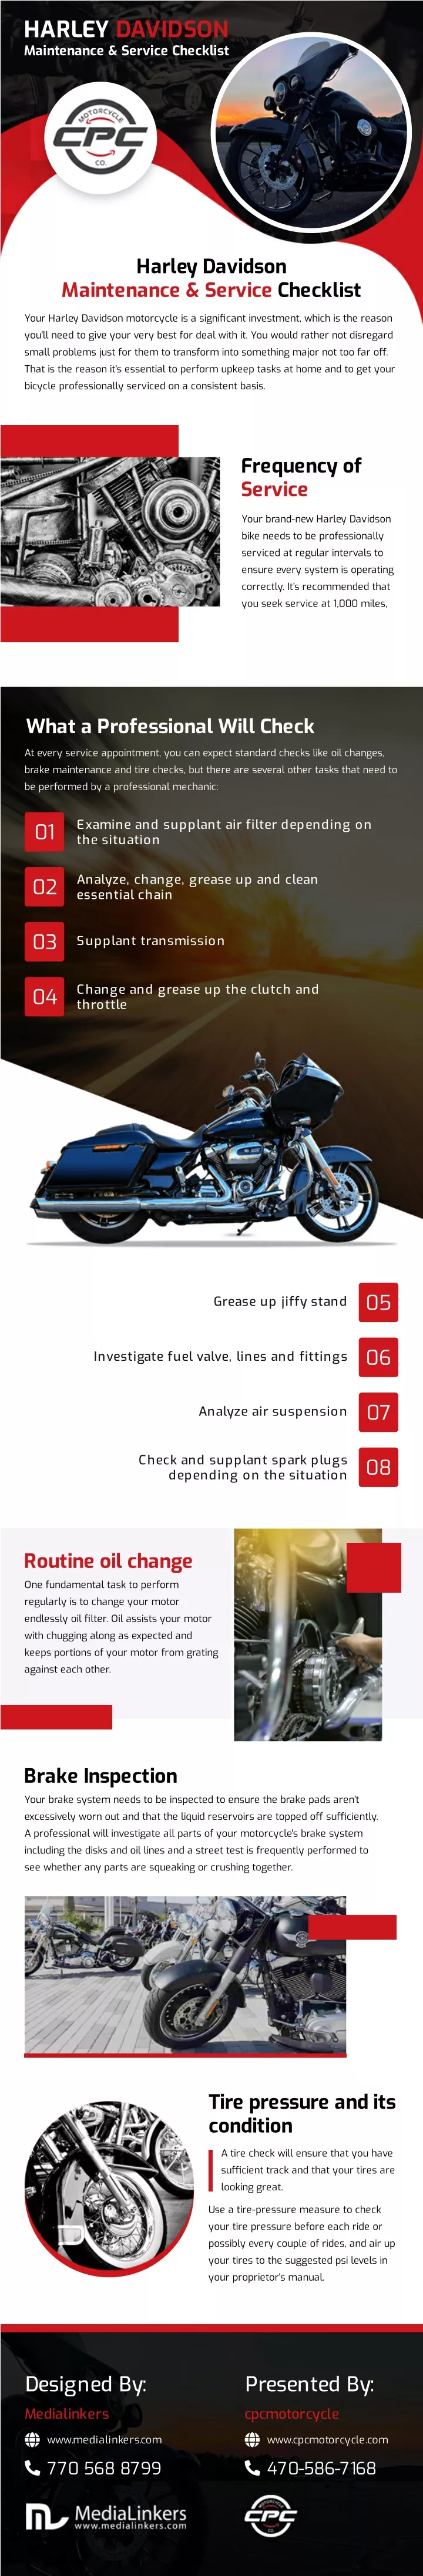 PPT - Harley Davidson Maintenance & Service Checklist PowerPoint ...